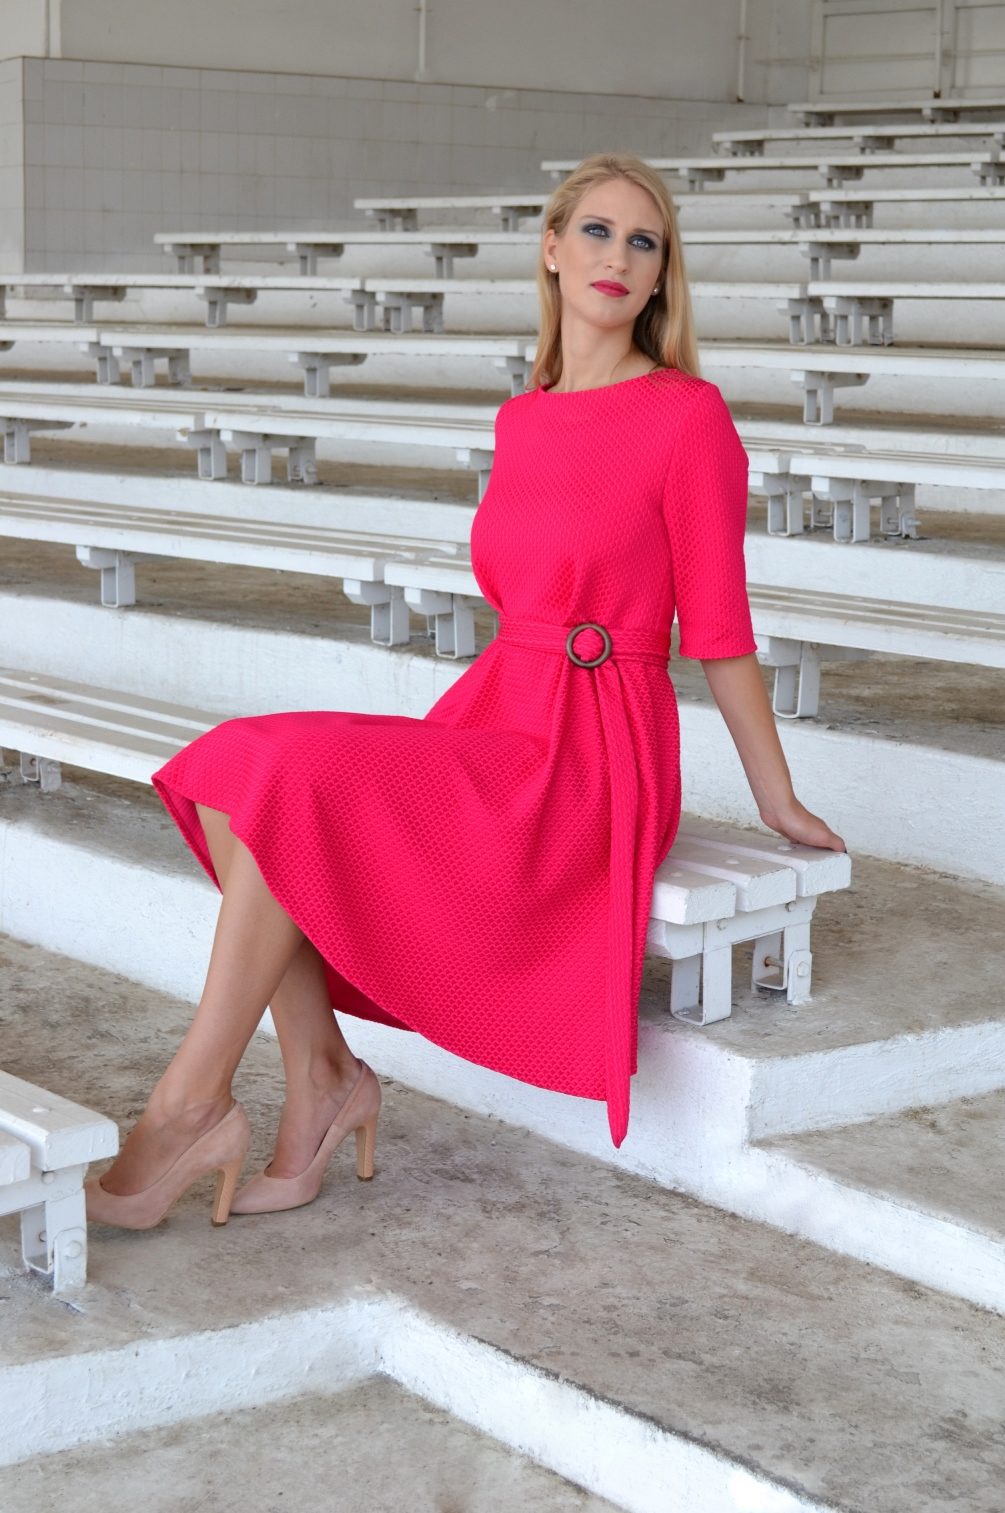 Růžové šaty